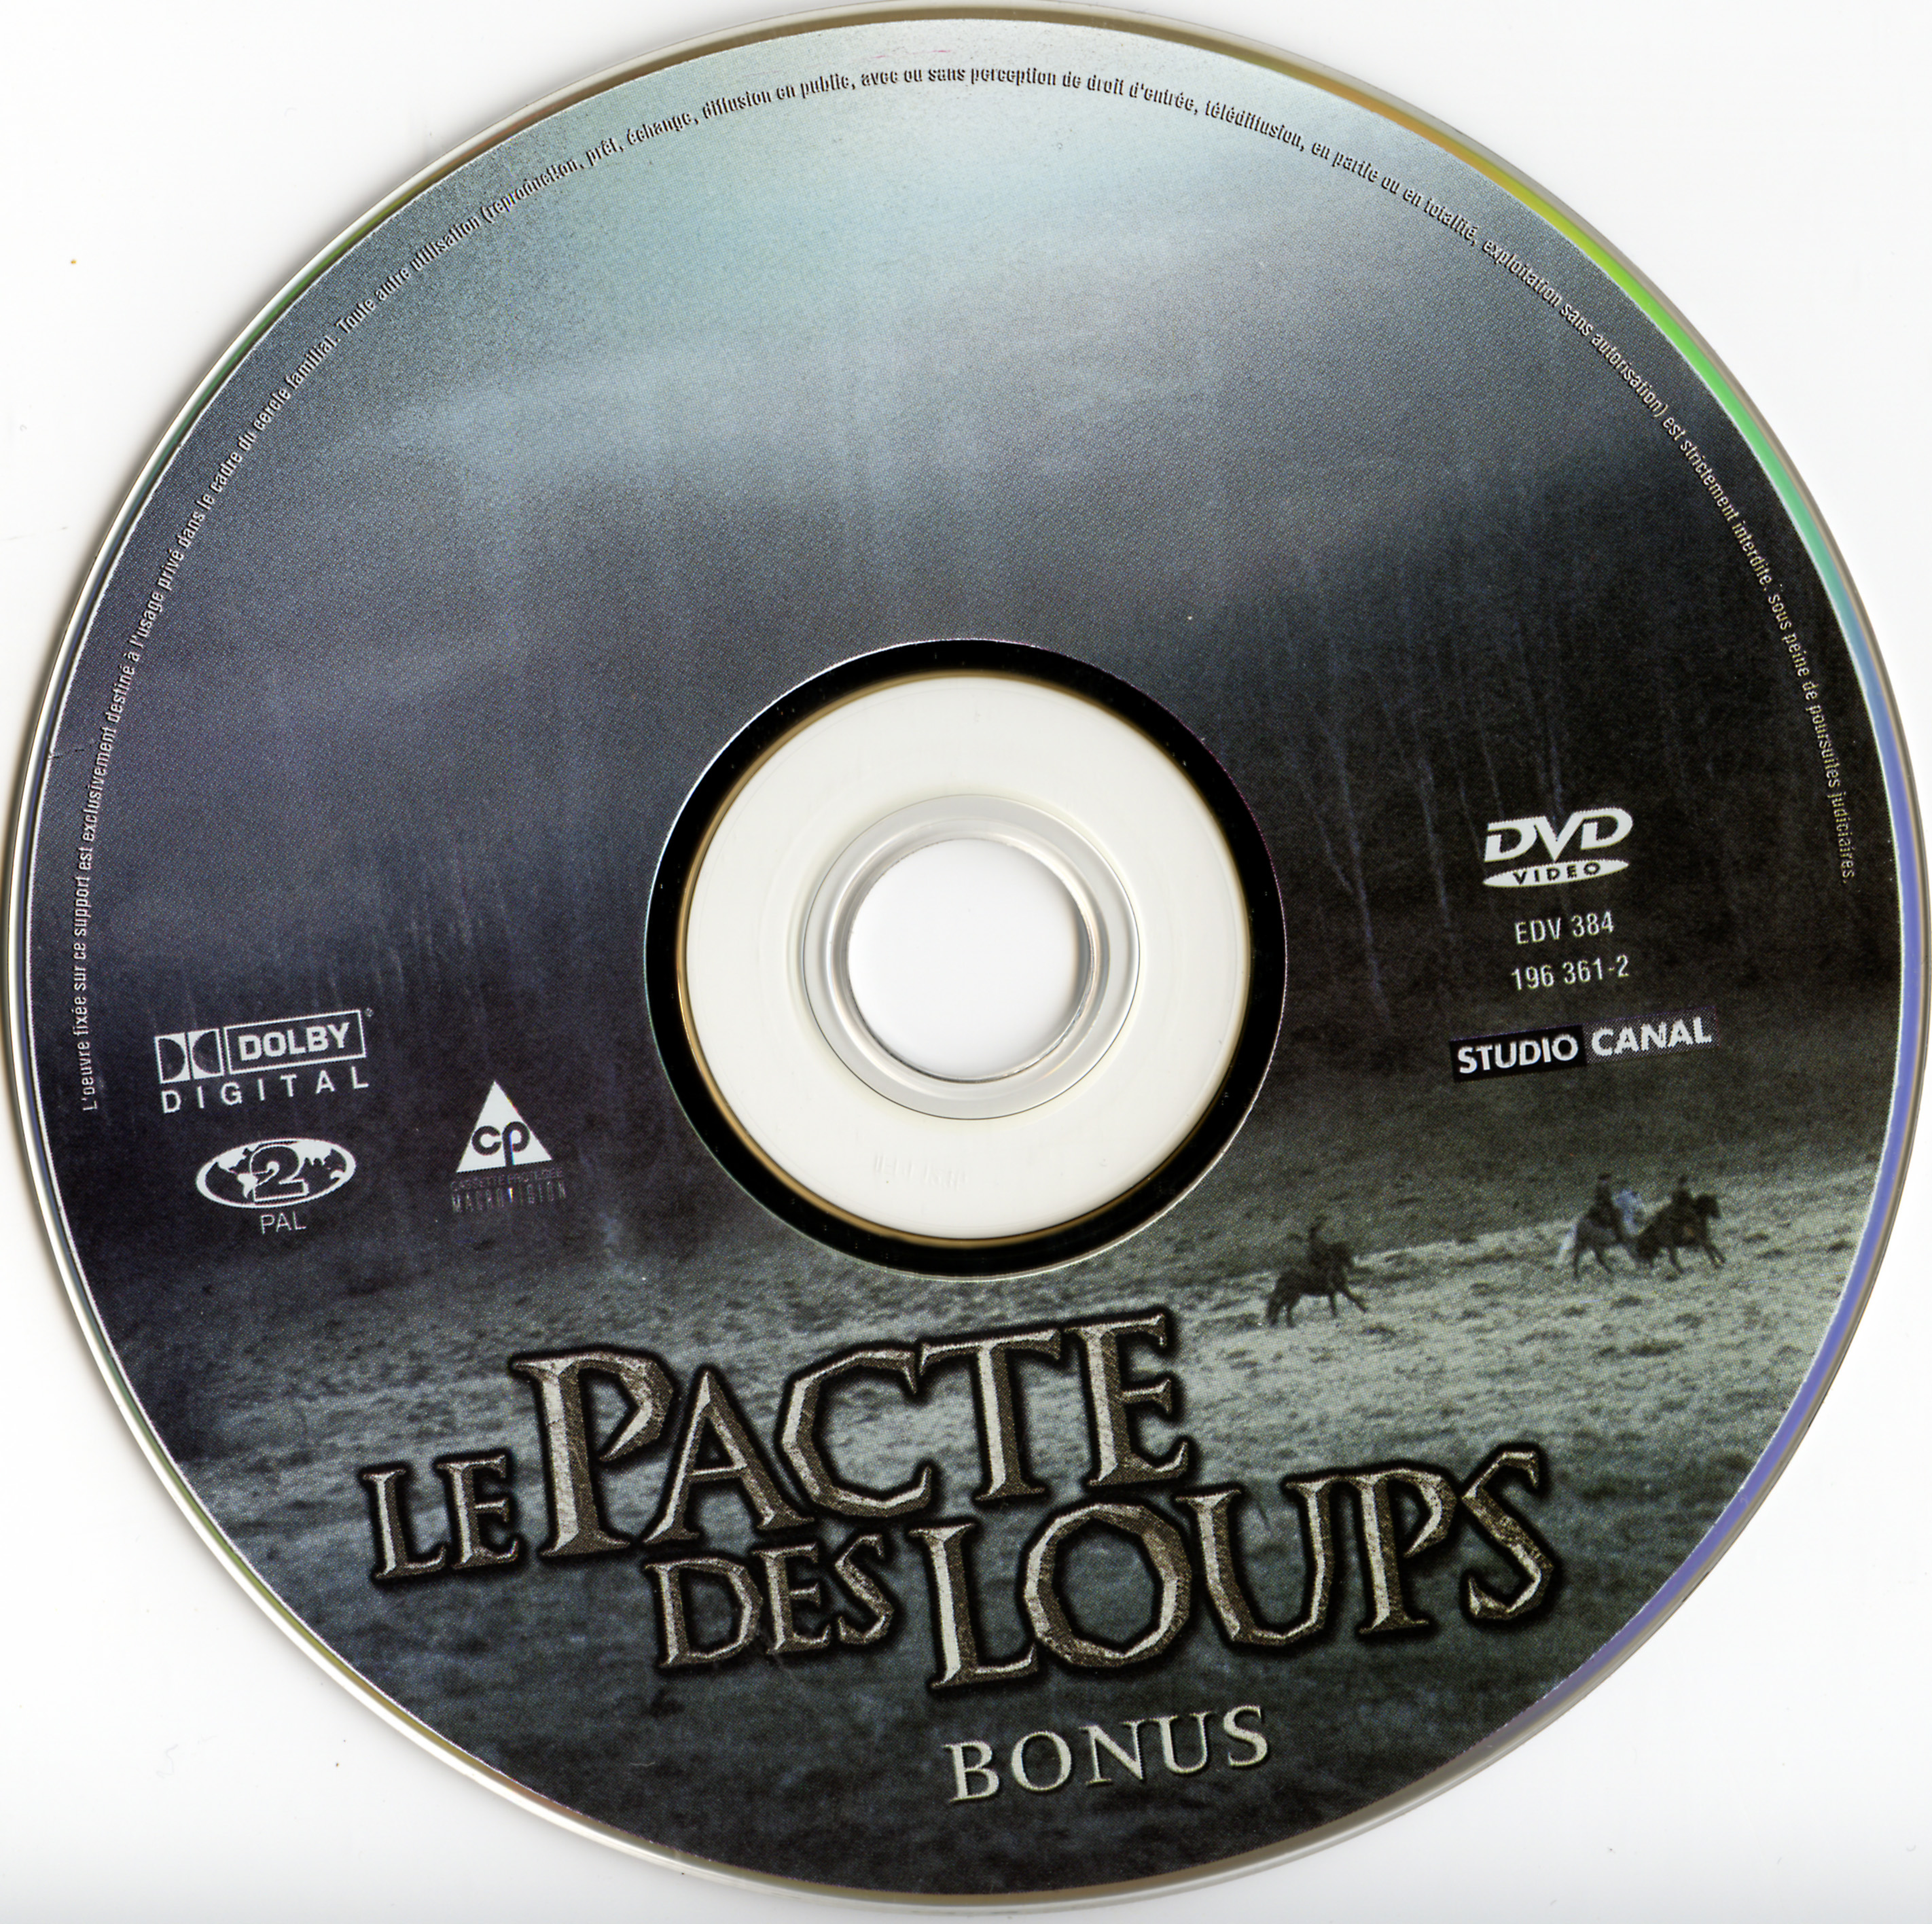 Le pacte des loups DISC 2